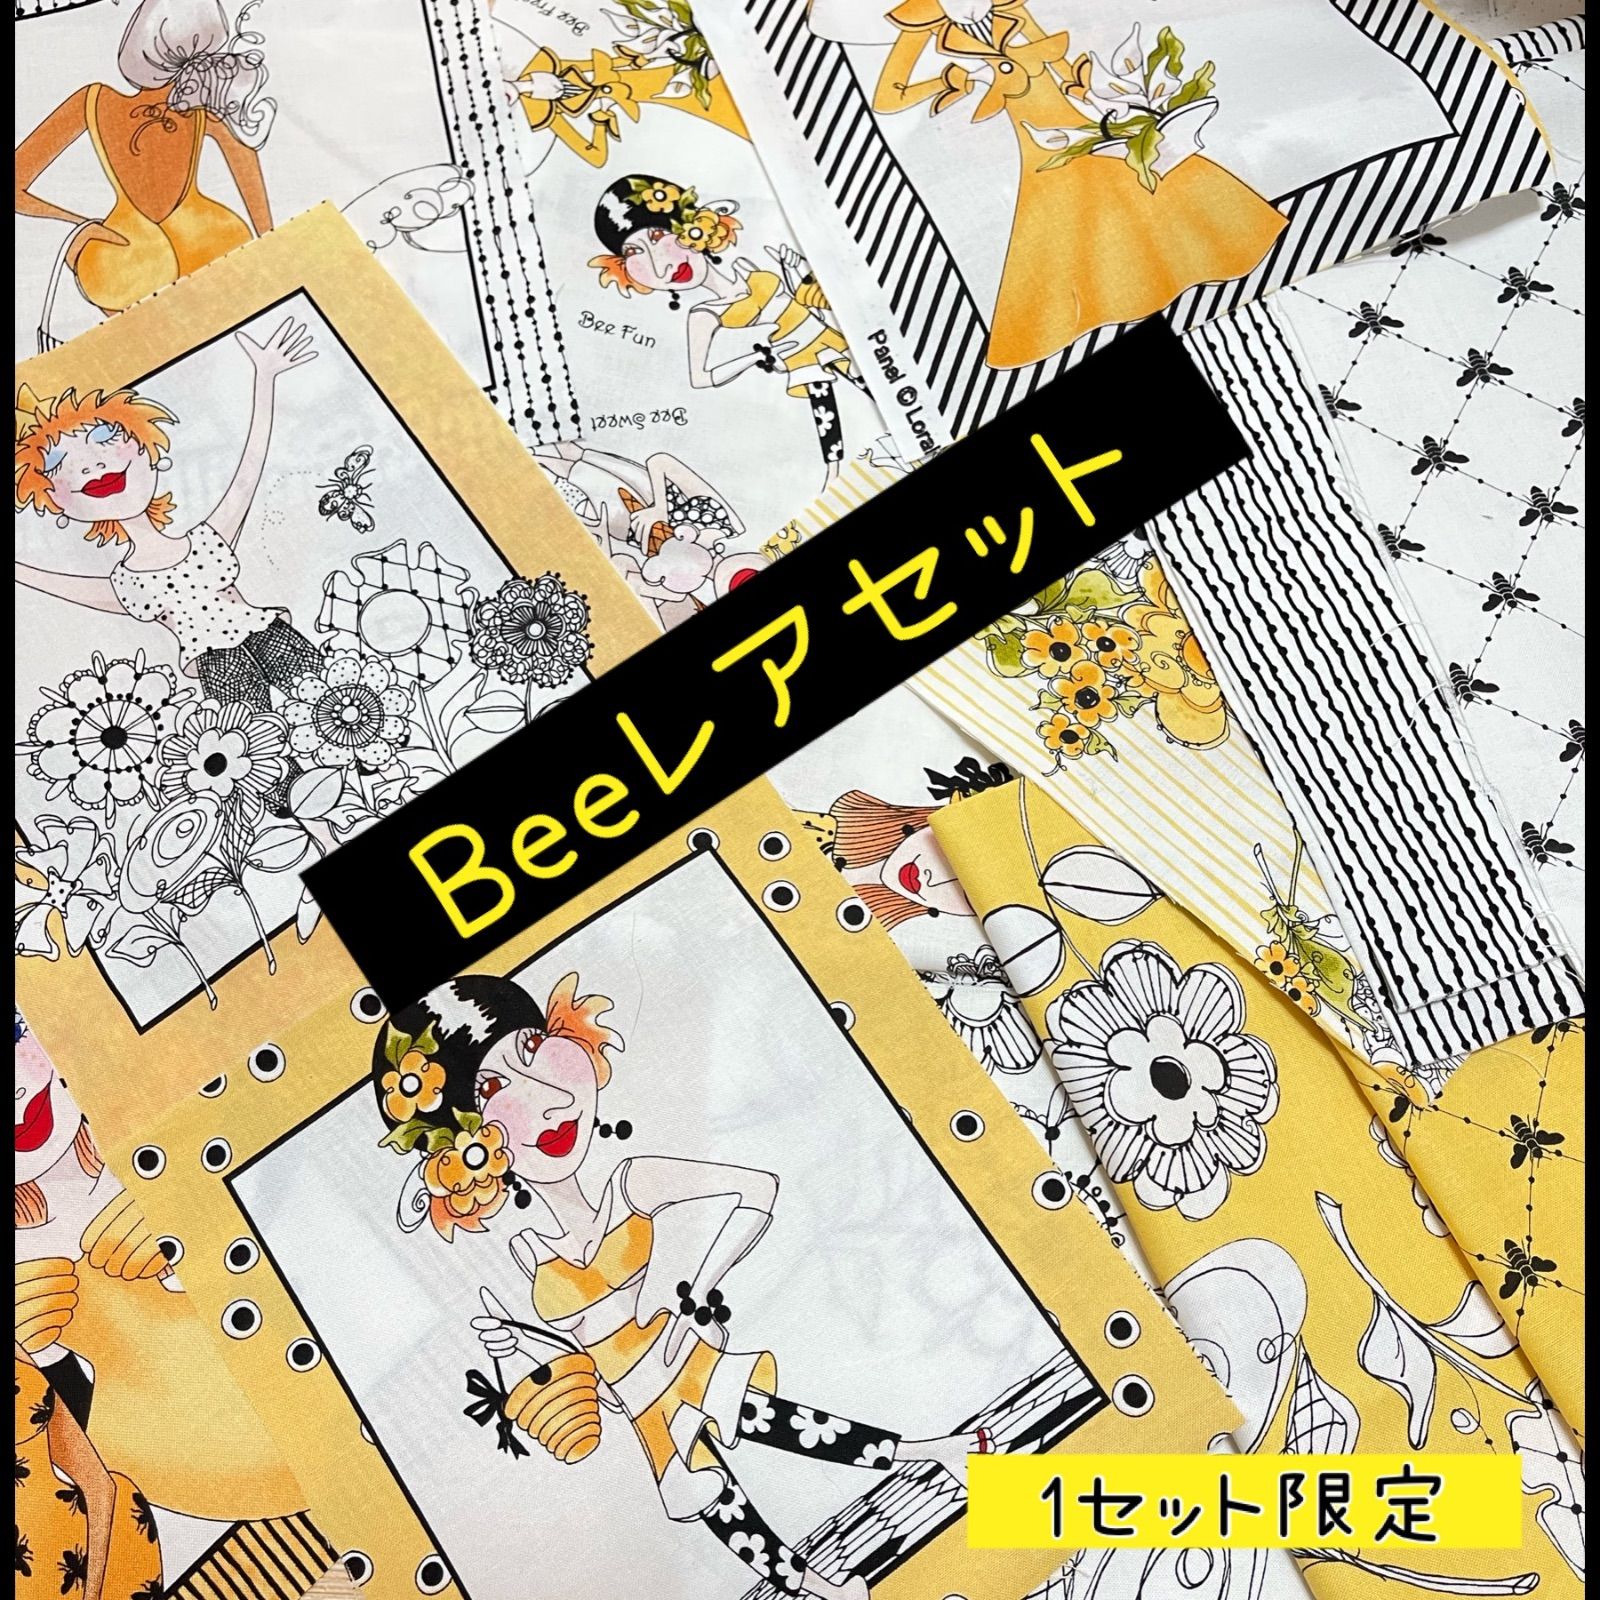 レア』輸入生地 ロラライハリス生地 廃盤レア Beeシリーズハギレセット ...